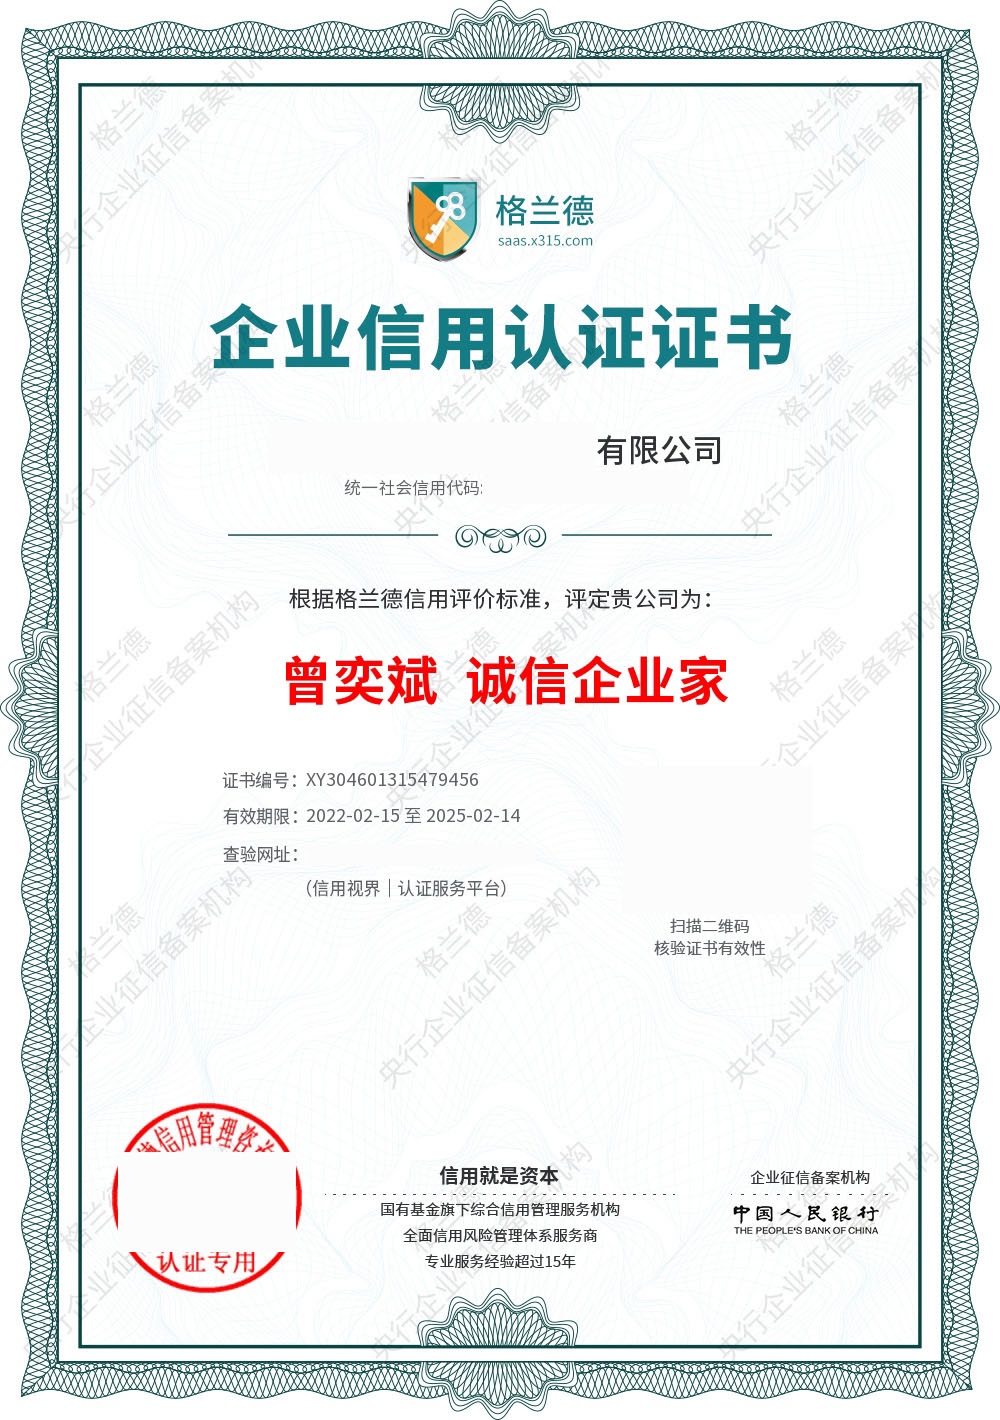 哈尔滨AAA企业信用评级认证